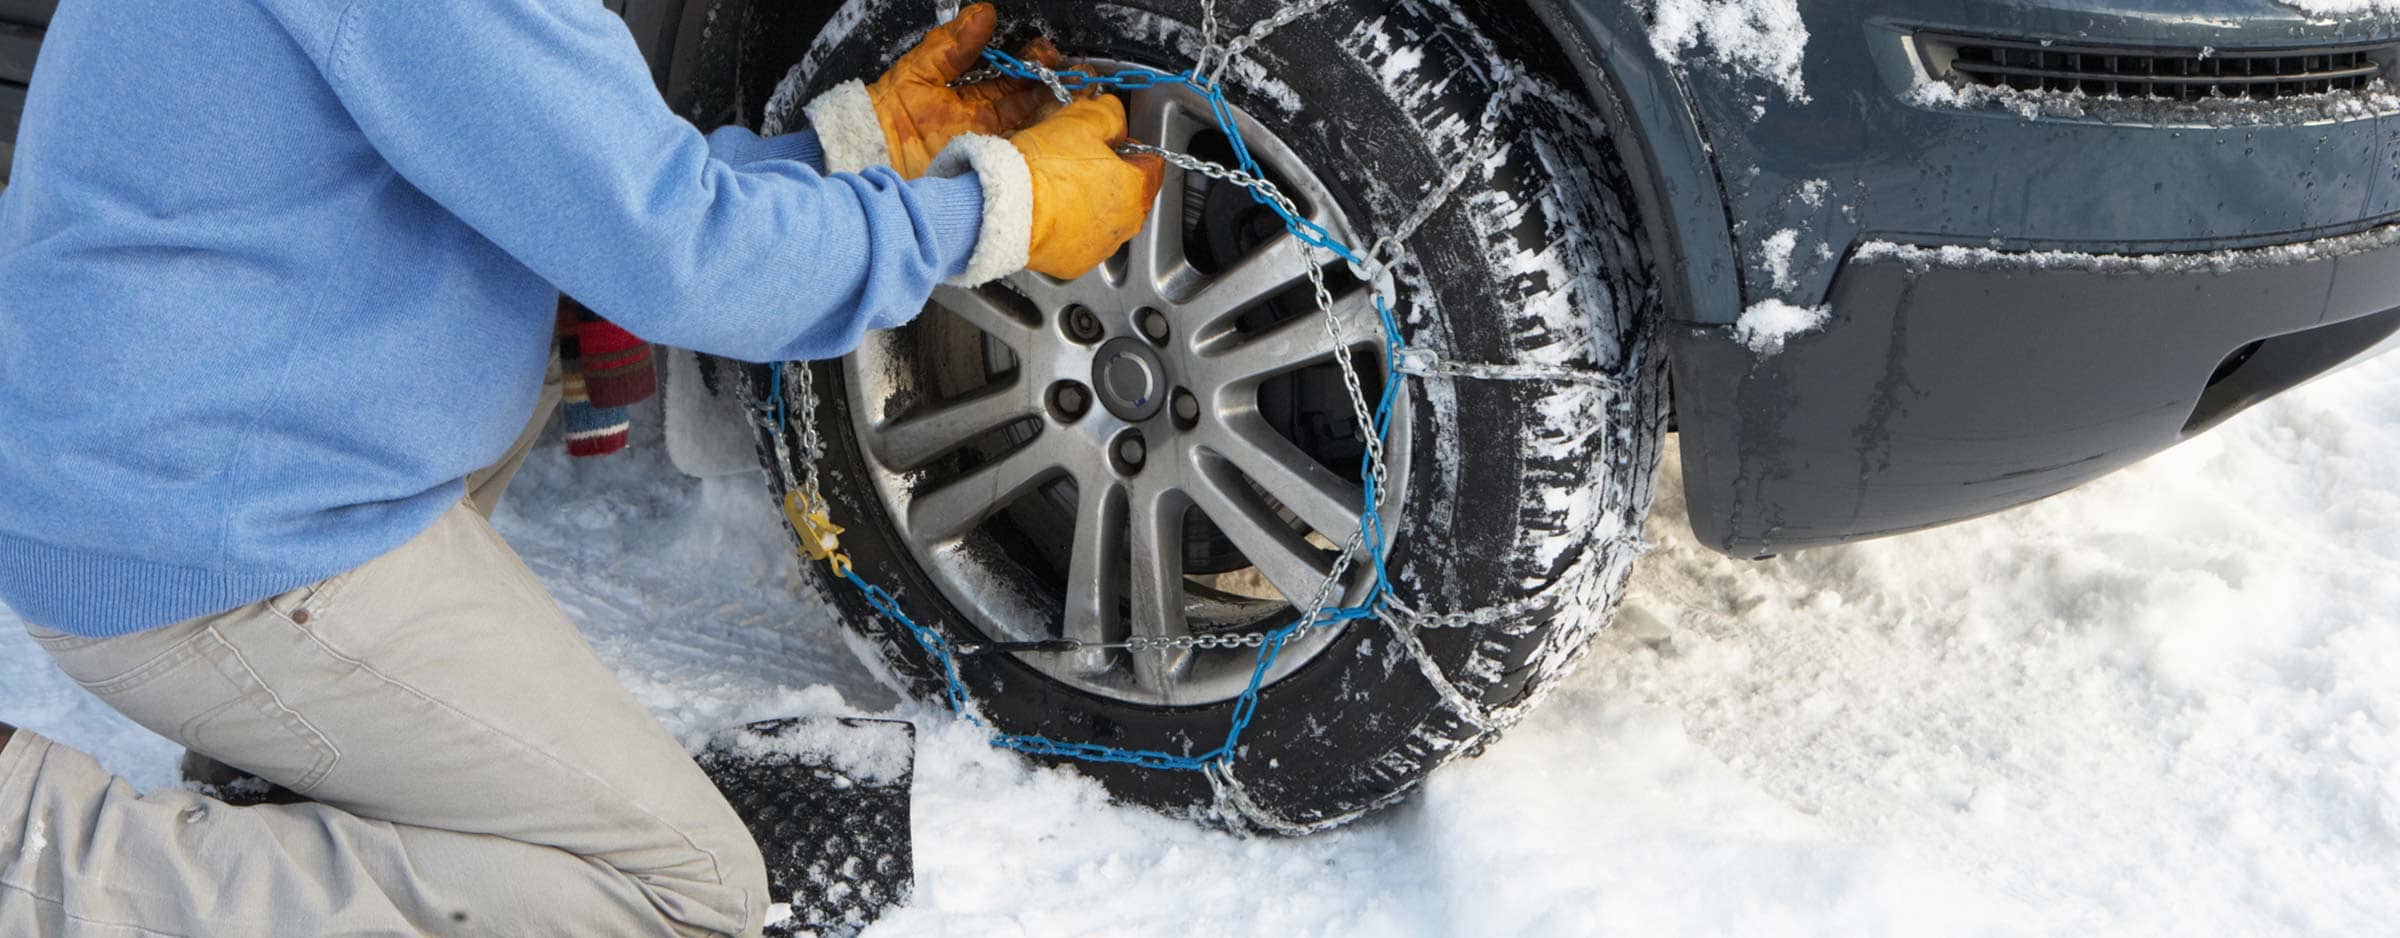 Χειμωνιάτικα λάστιχα και αλυσίδες, winter tyres and snowchains